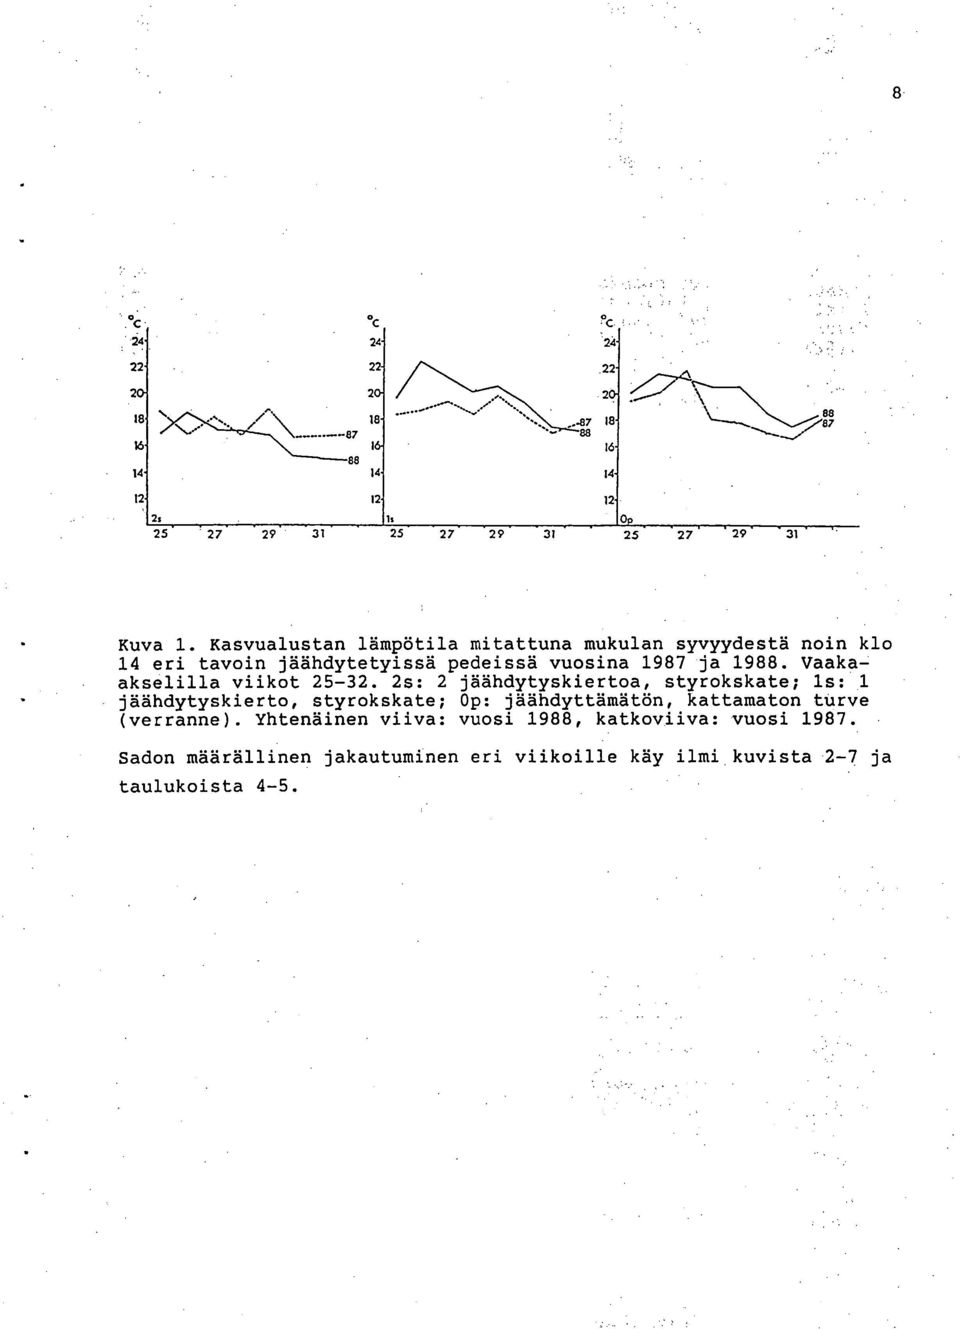 Kasvualustan lämpötila mitattuna mukulan syvyydestä noin klo 14 eri tavoin jäähdytetyissä pedeissä vuosina 1987 ja 1988.